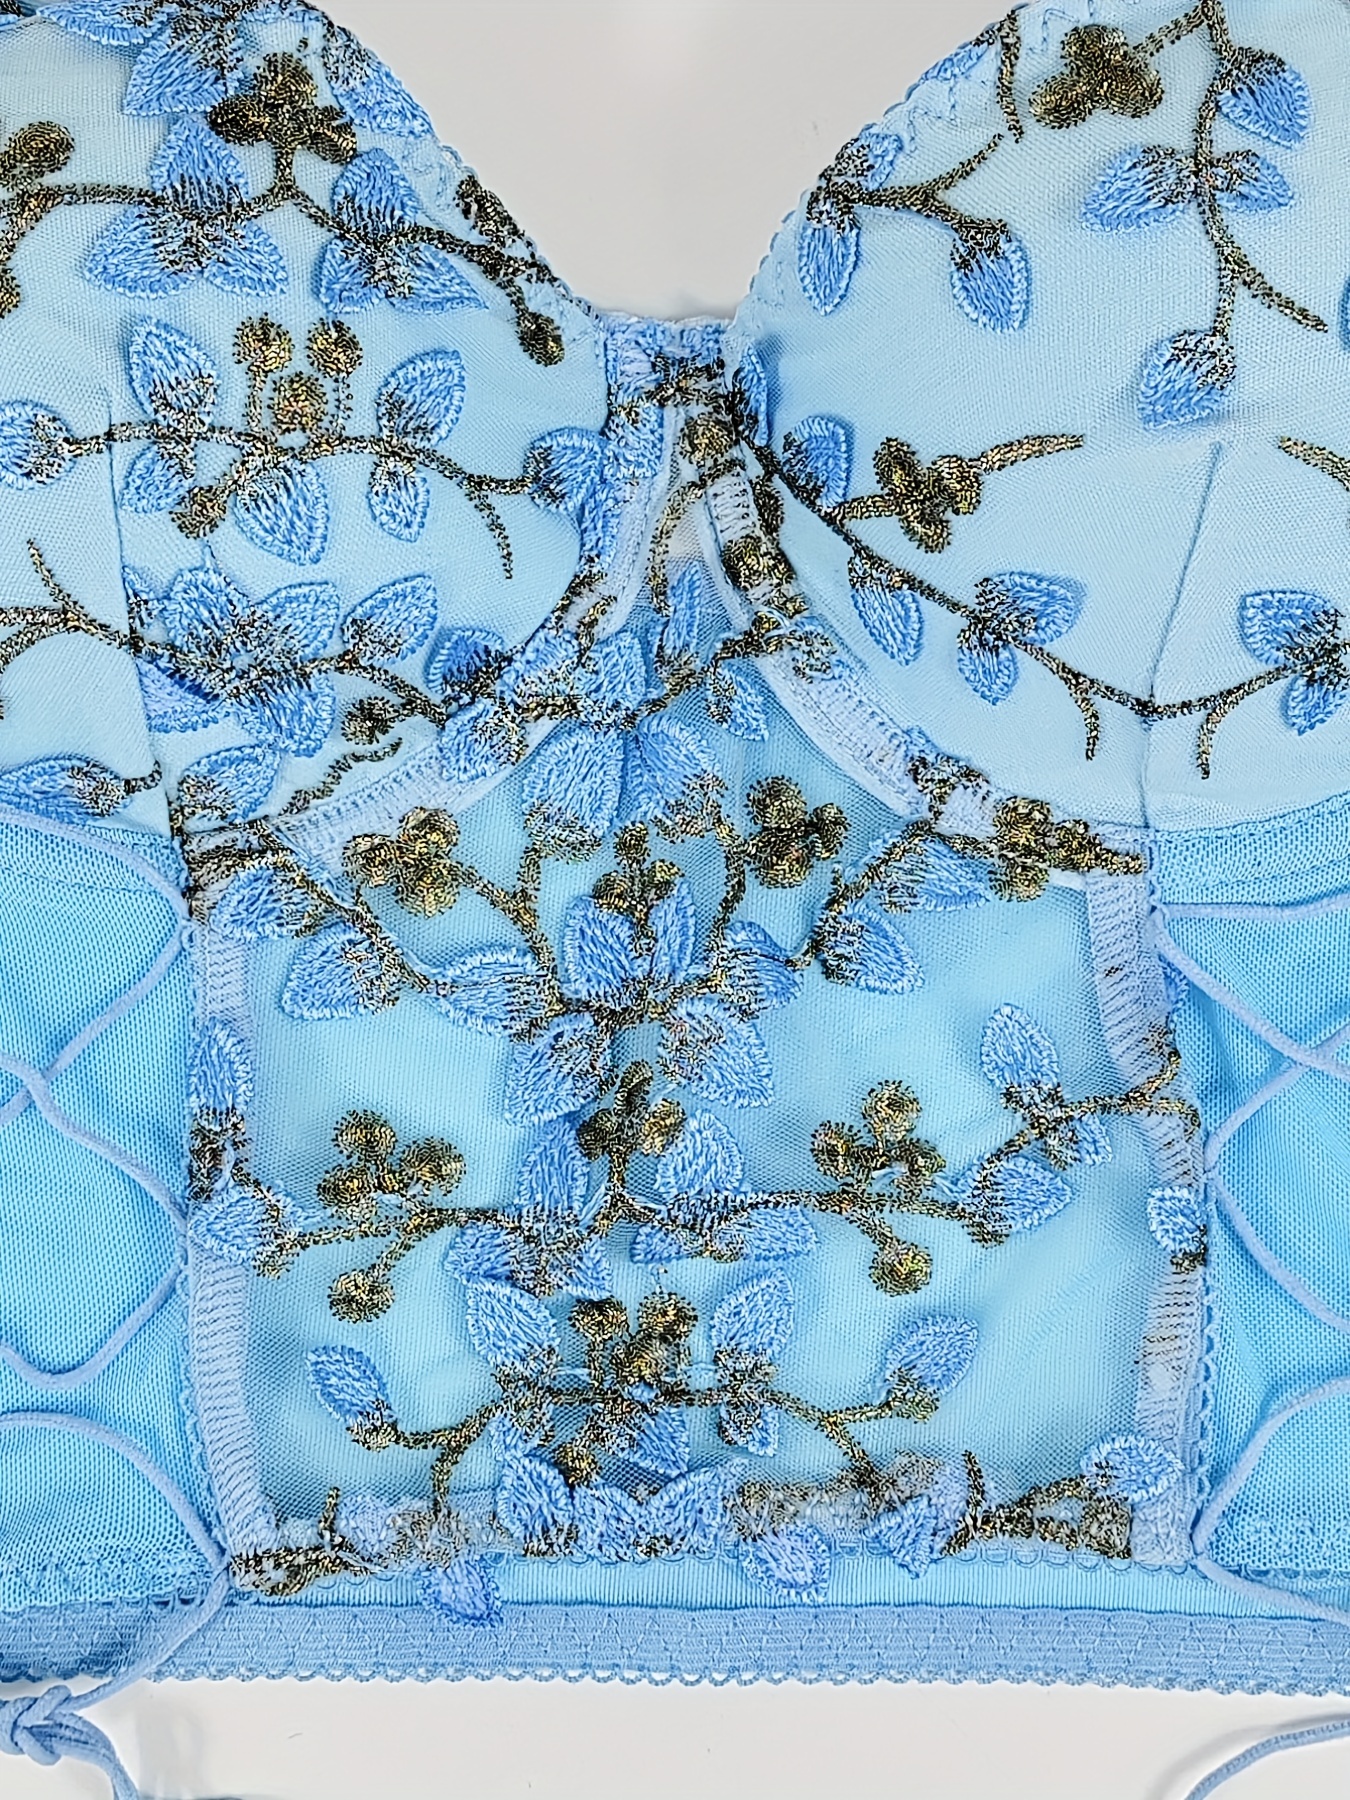 Lace camisole top - Bras - Underwear - UNDERWEAR